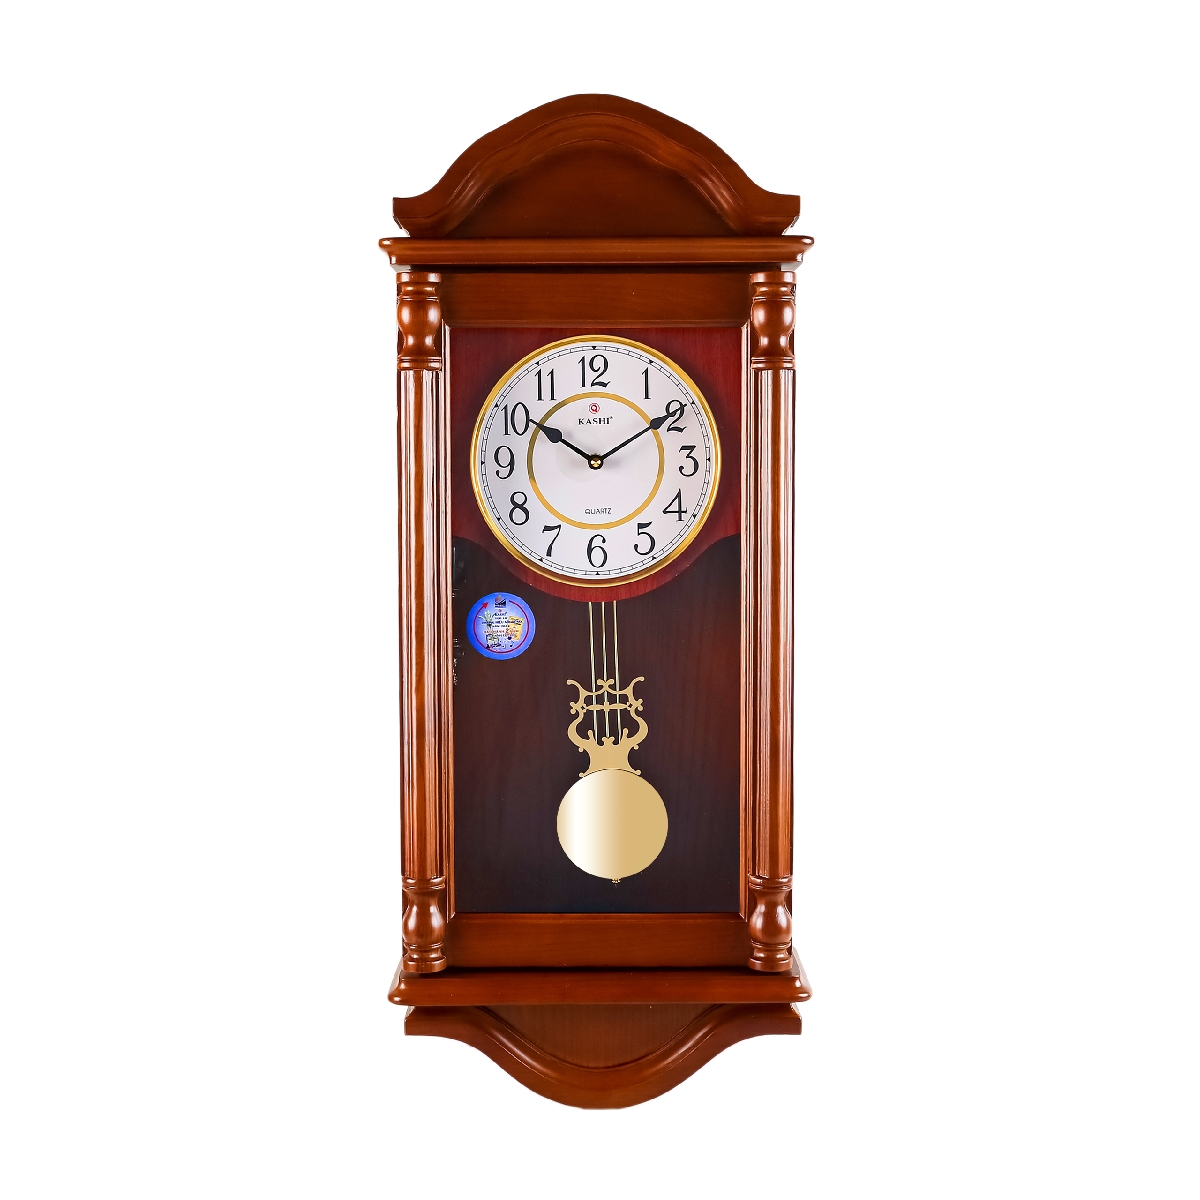 Đồng hồ treo tường quả lắc New HM672 Kashi Clock